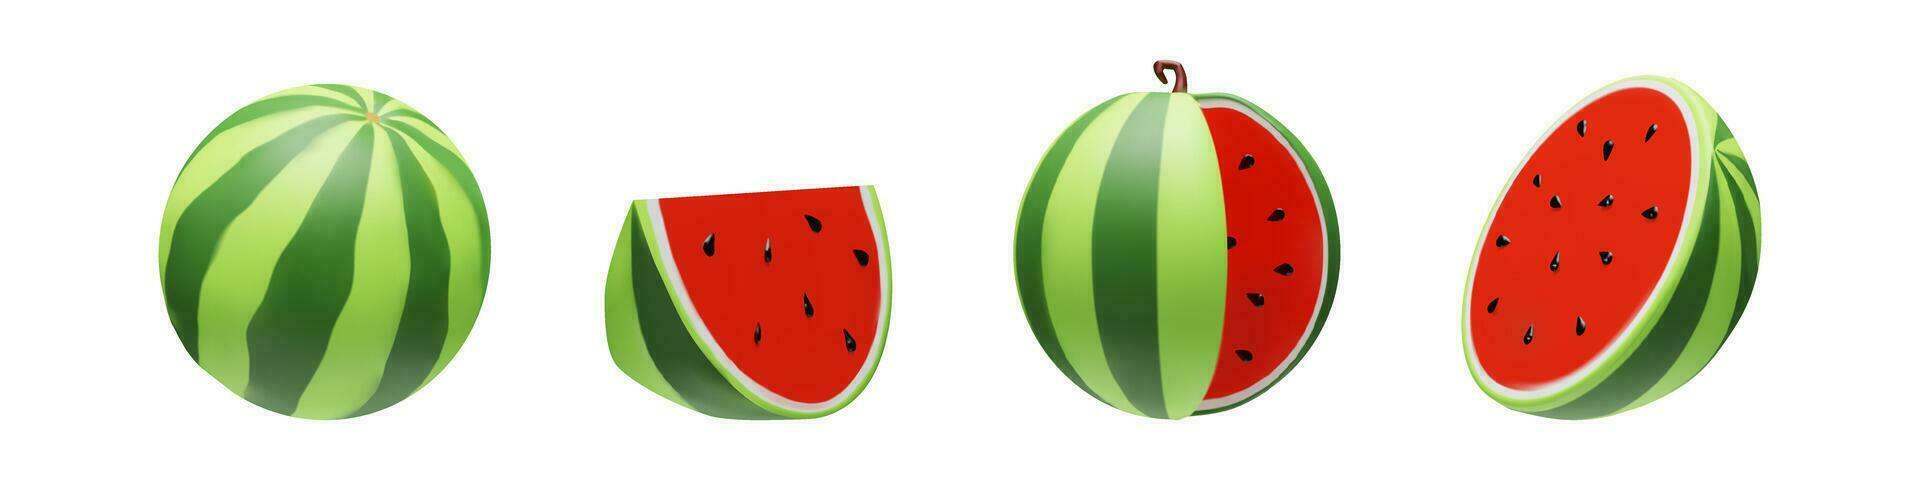 3d geven reeks van verschillend onderdelen van watermeloen. voor de helft, vol, klein en groot een deel van zoet biologisch fruit. vector illustratie klei stijl. rood en groen vitamine BES voor vegetarisch eetpatroon. zomer oogst